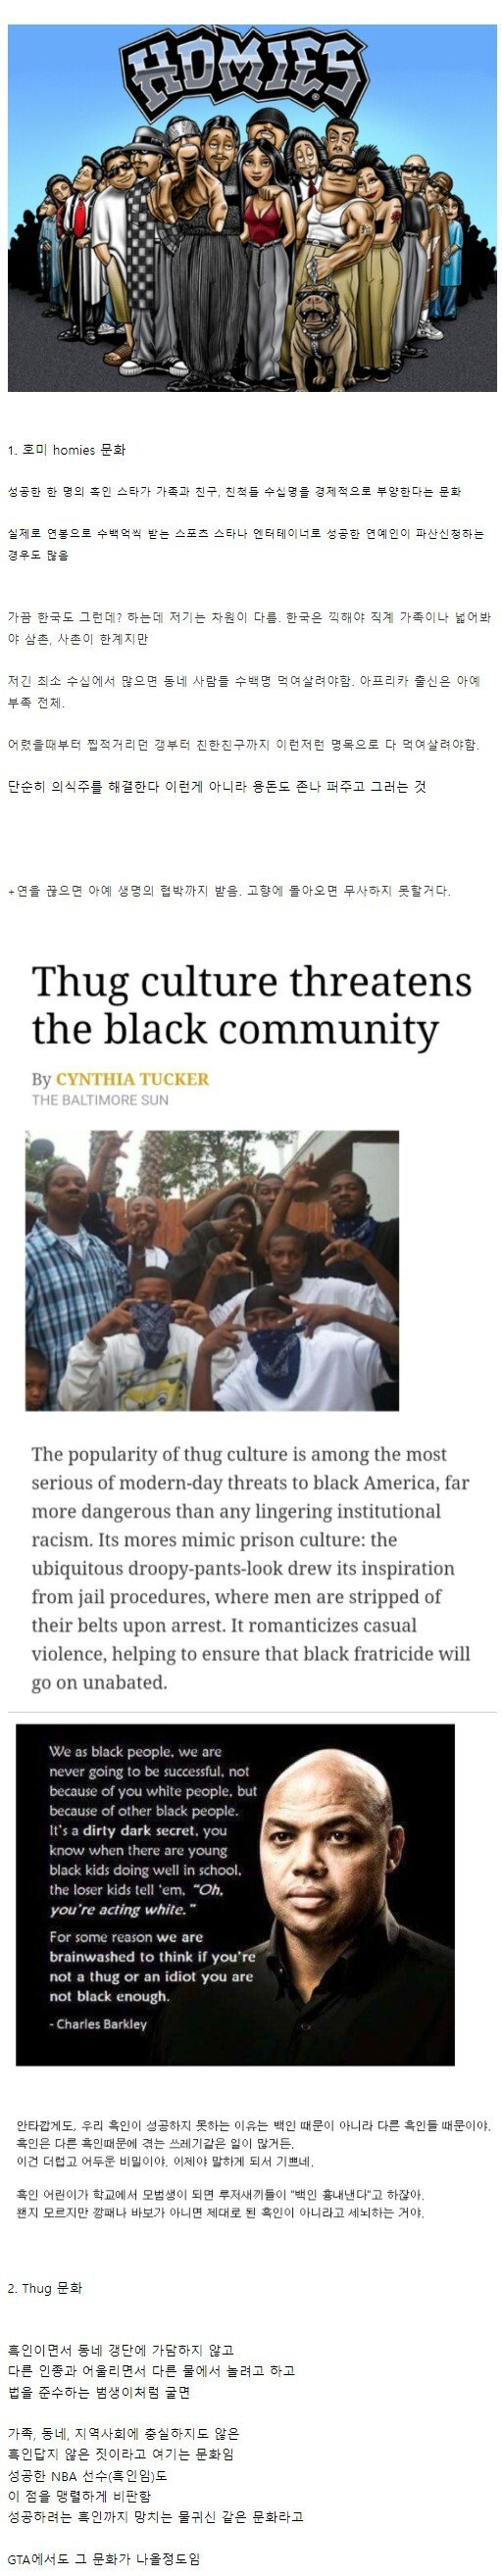 スラム街出身の黒人を駄目にする二つの文化